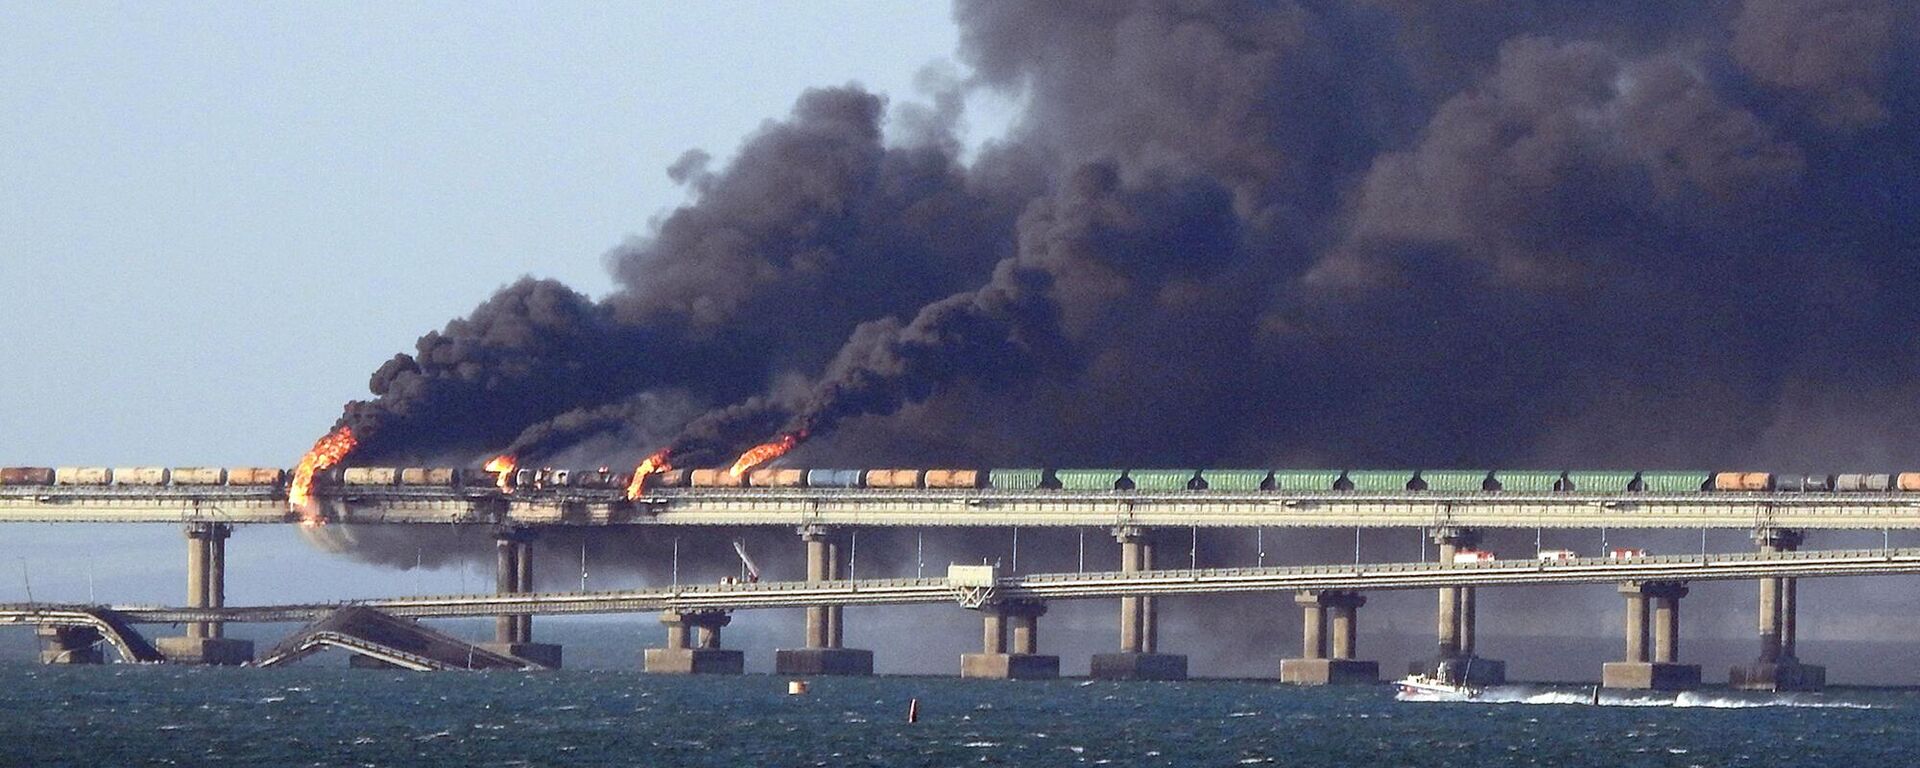 Fumaça preta sobe de um incêndio na ponte de Kerch que liga a Crimeia à Rússia, depois que um caminhão explodiu, perto de Kerch, em 8 de outubro de 2022 - Sputnik Brasil, 1920, 08.10.2022